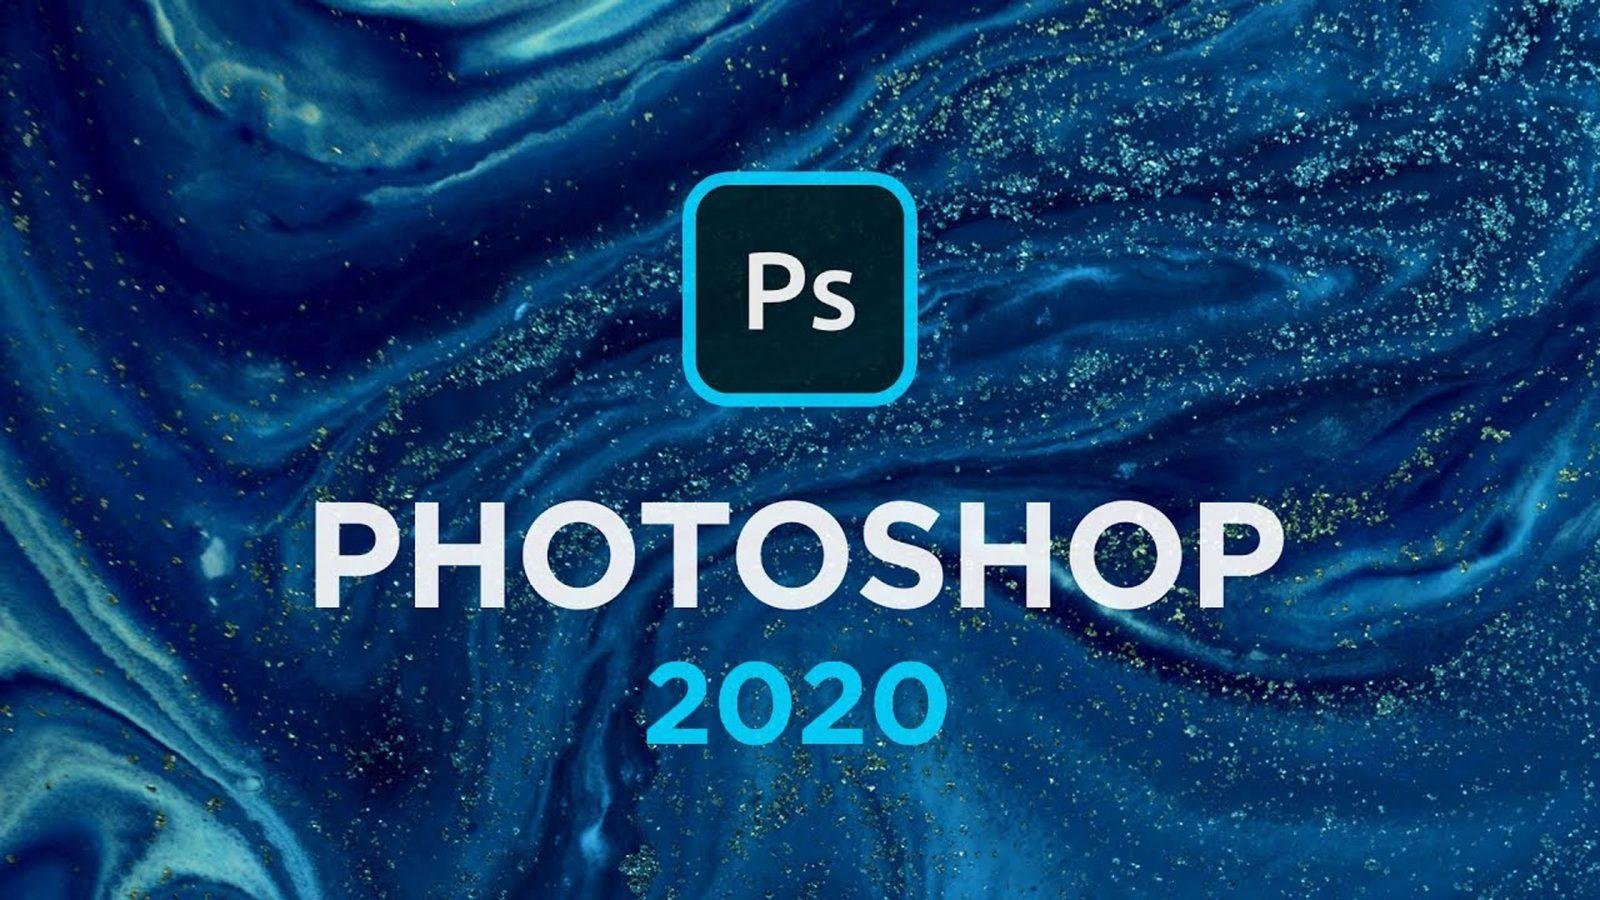  Hướng Dẫn Download Và Cài Đặt Adobe Photoshop 2020